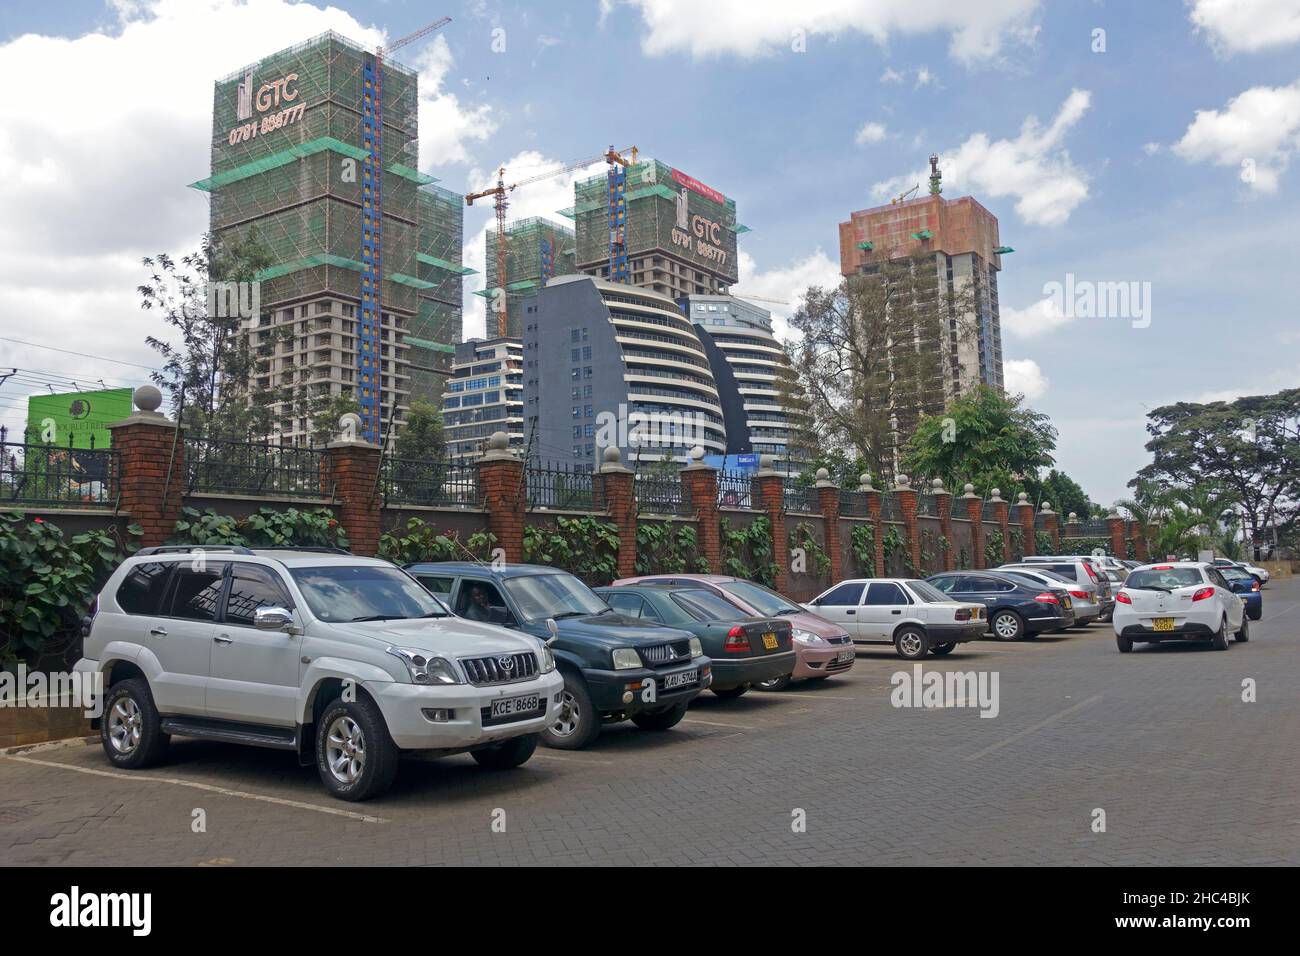 Construcción del Centro de Comercio Global GTC Desarrollo moderno de gran altura en Nairobi Kenia Foto de stock